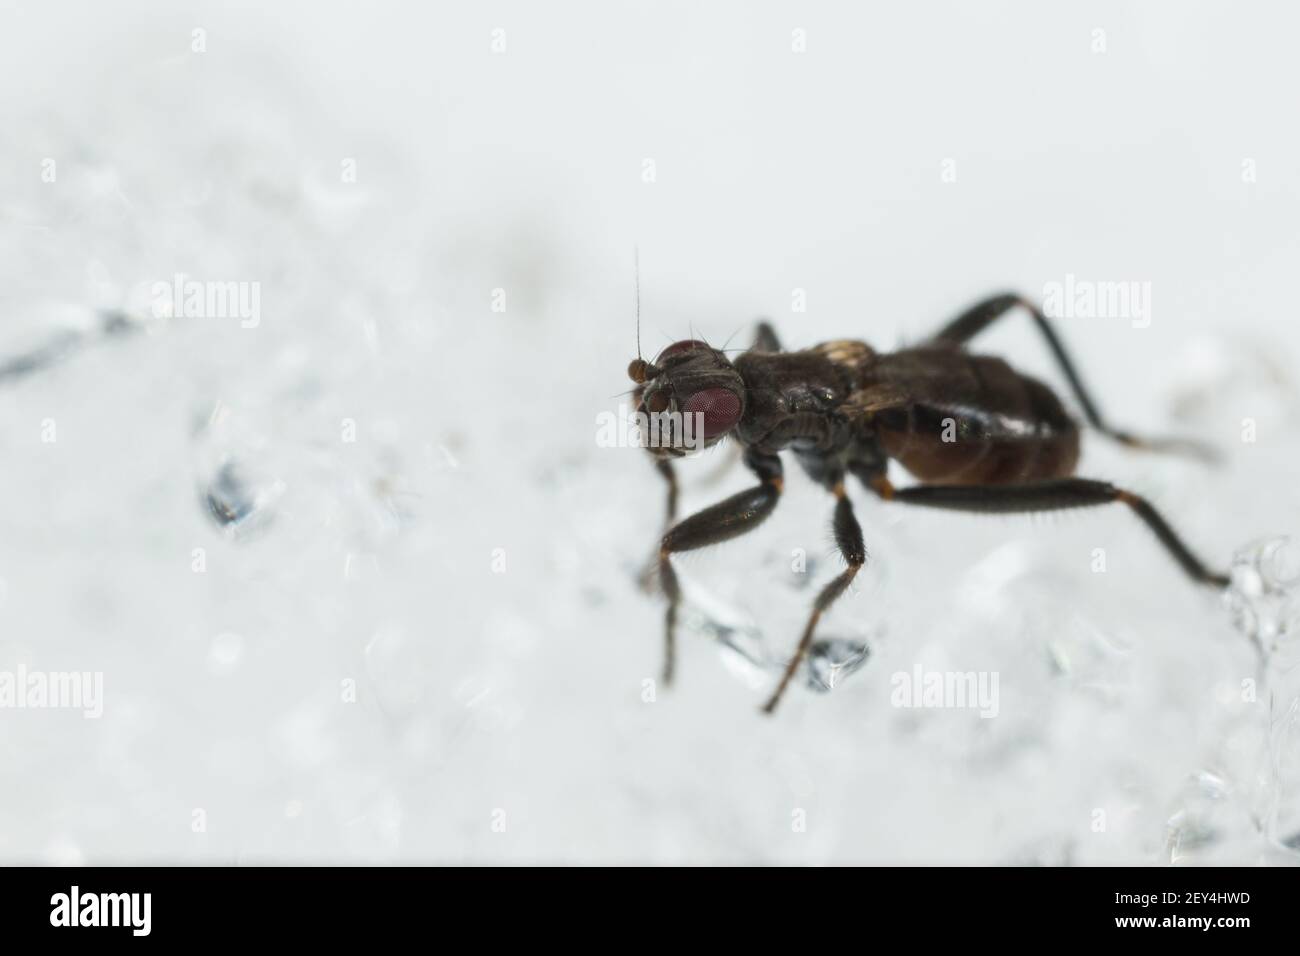 Petite mouche de Dung (Crumomyia pedestris) marchant sur la neige Banque D'Images